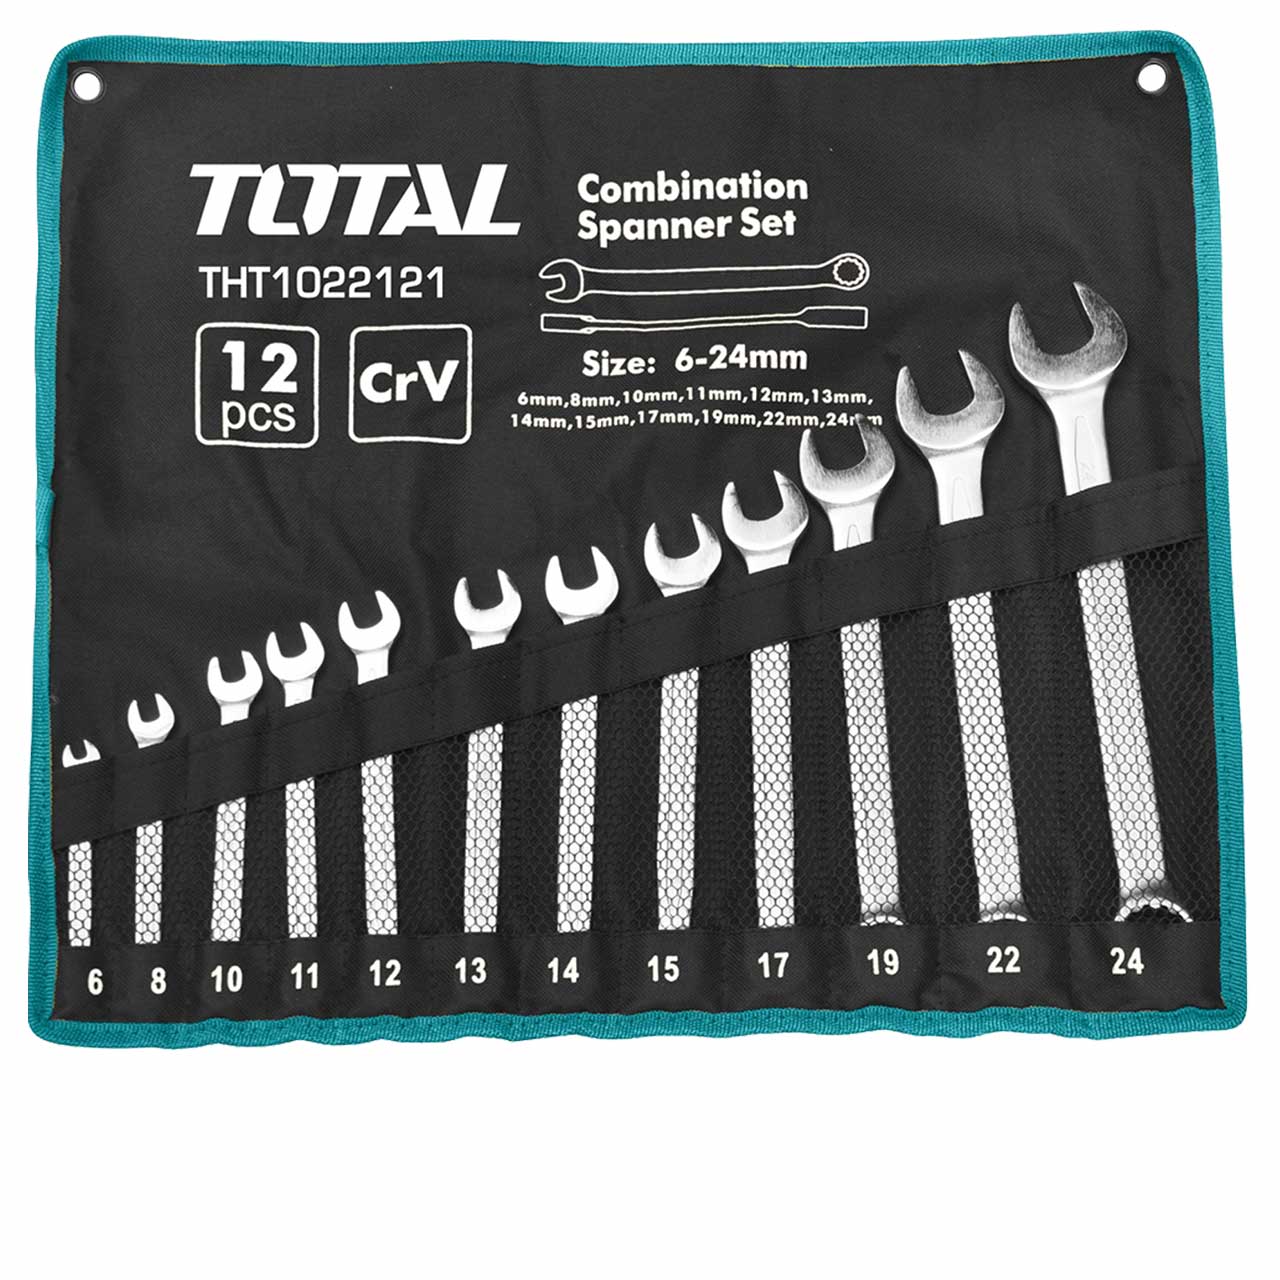 12 Pcs Combination Spanner Set – Total Tools Qatar